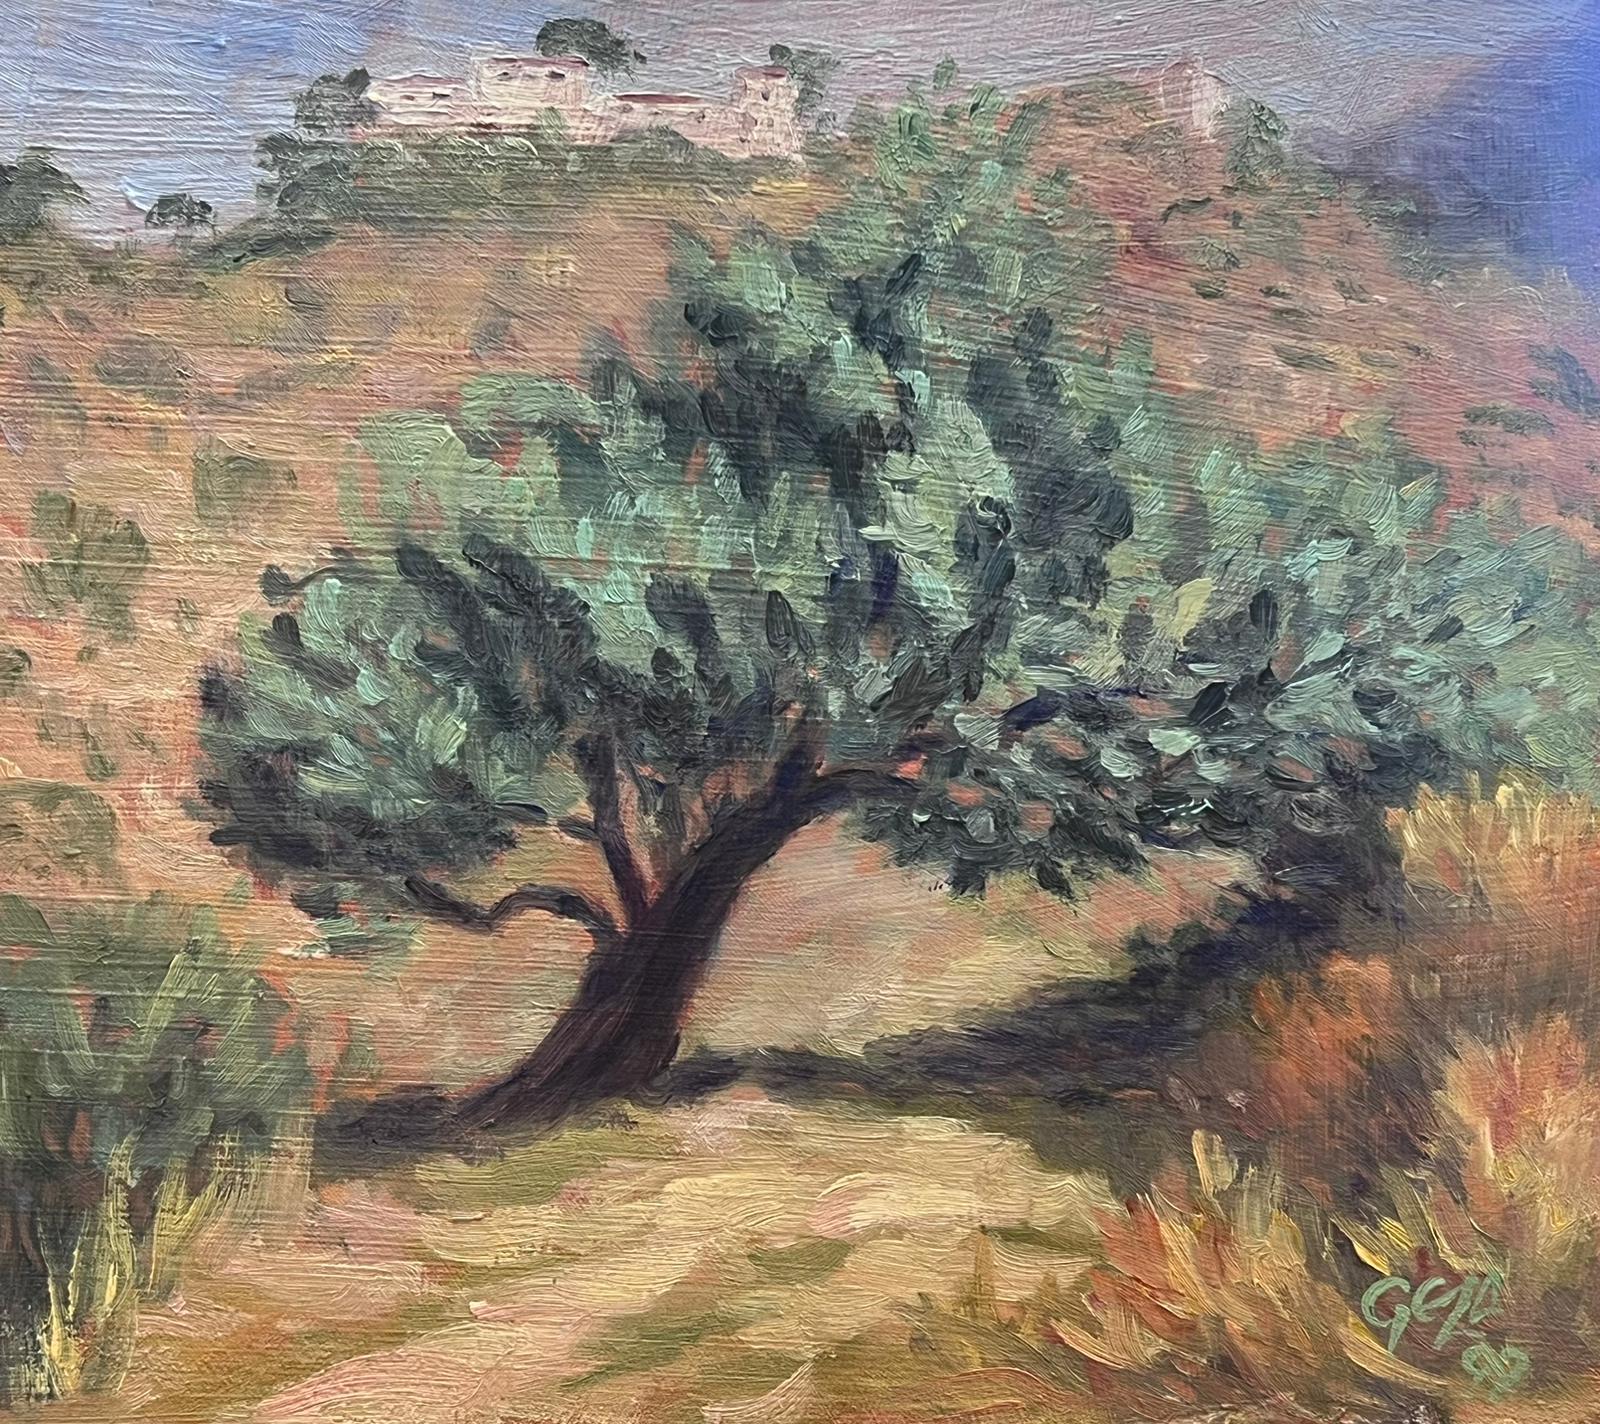 Landscape Painting Geza Somerset-Paddon - Paysage de l'olivier rustique Peinture à l'huile contemporaine britannique